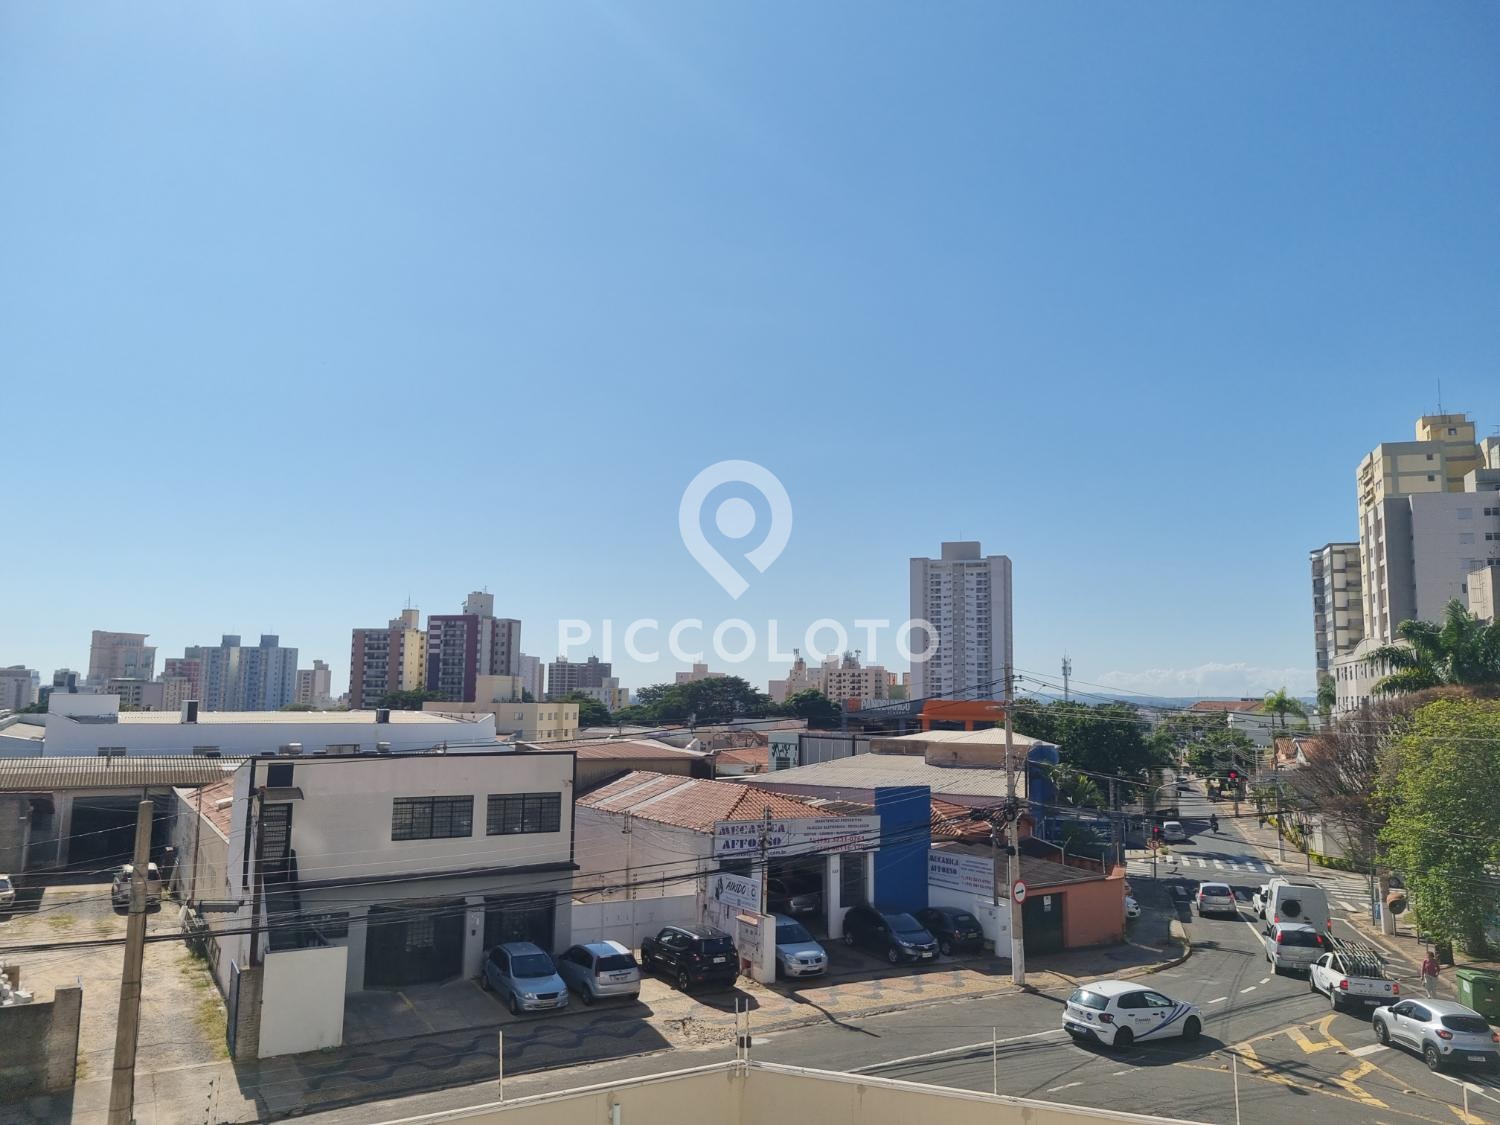 Piccoloto -Apartamento para alugar no Vila João Jorge em Campinas